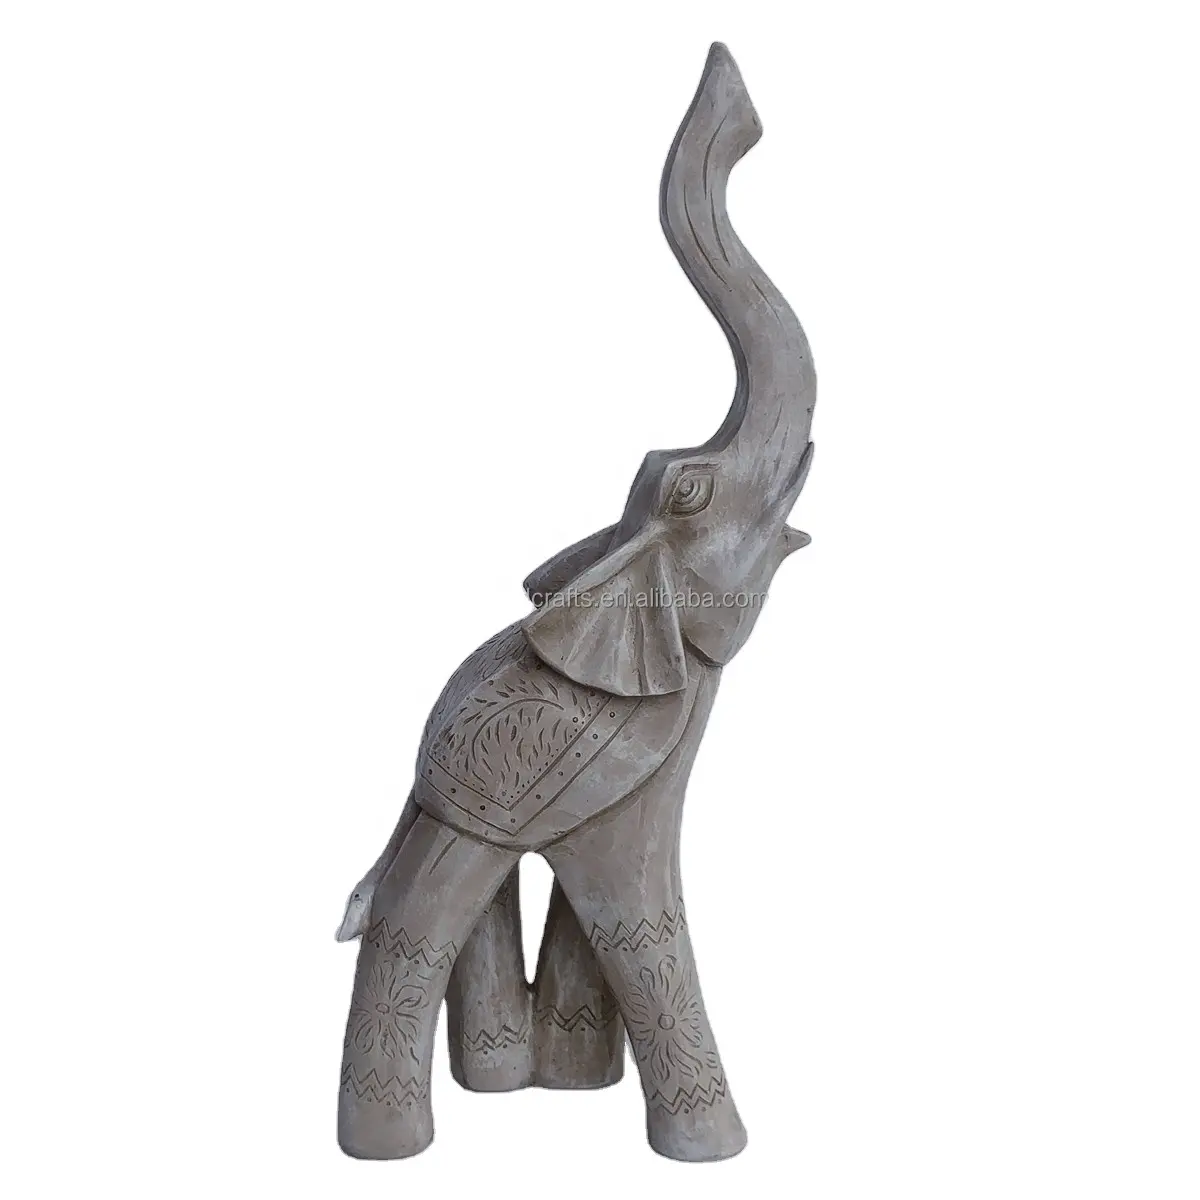 حظ سعيد ديكورات تمثال فيل للمنزل ، تماثيل الفيل تماثيل ديكور المنزل حرف بوليريسين